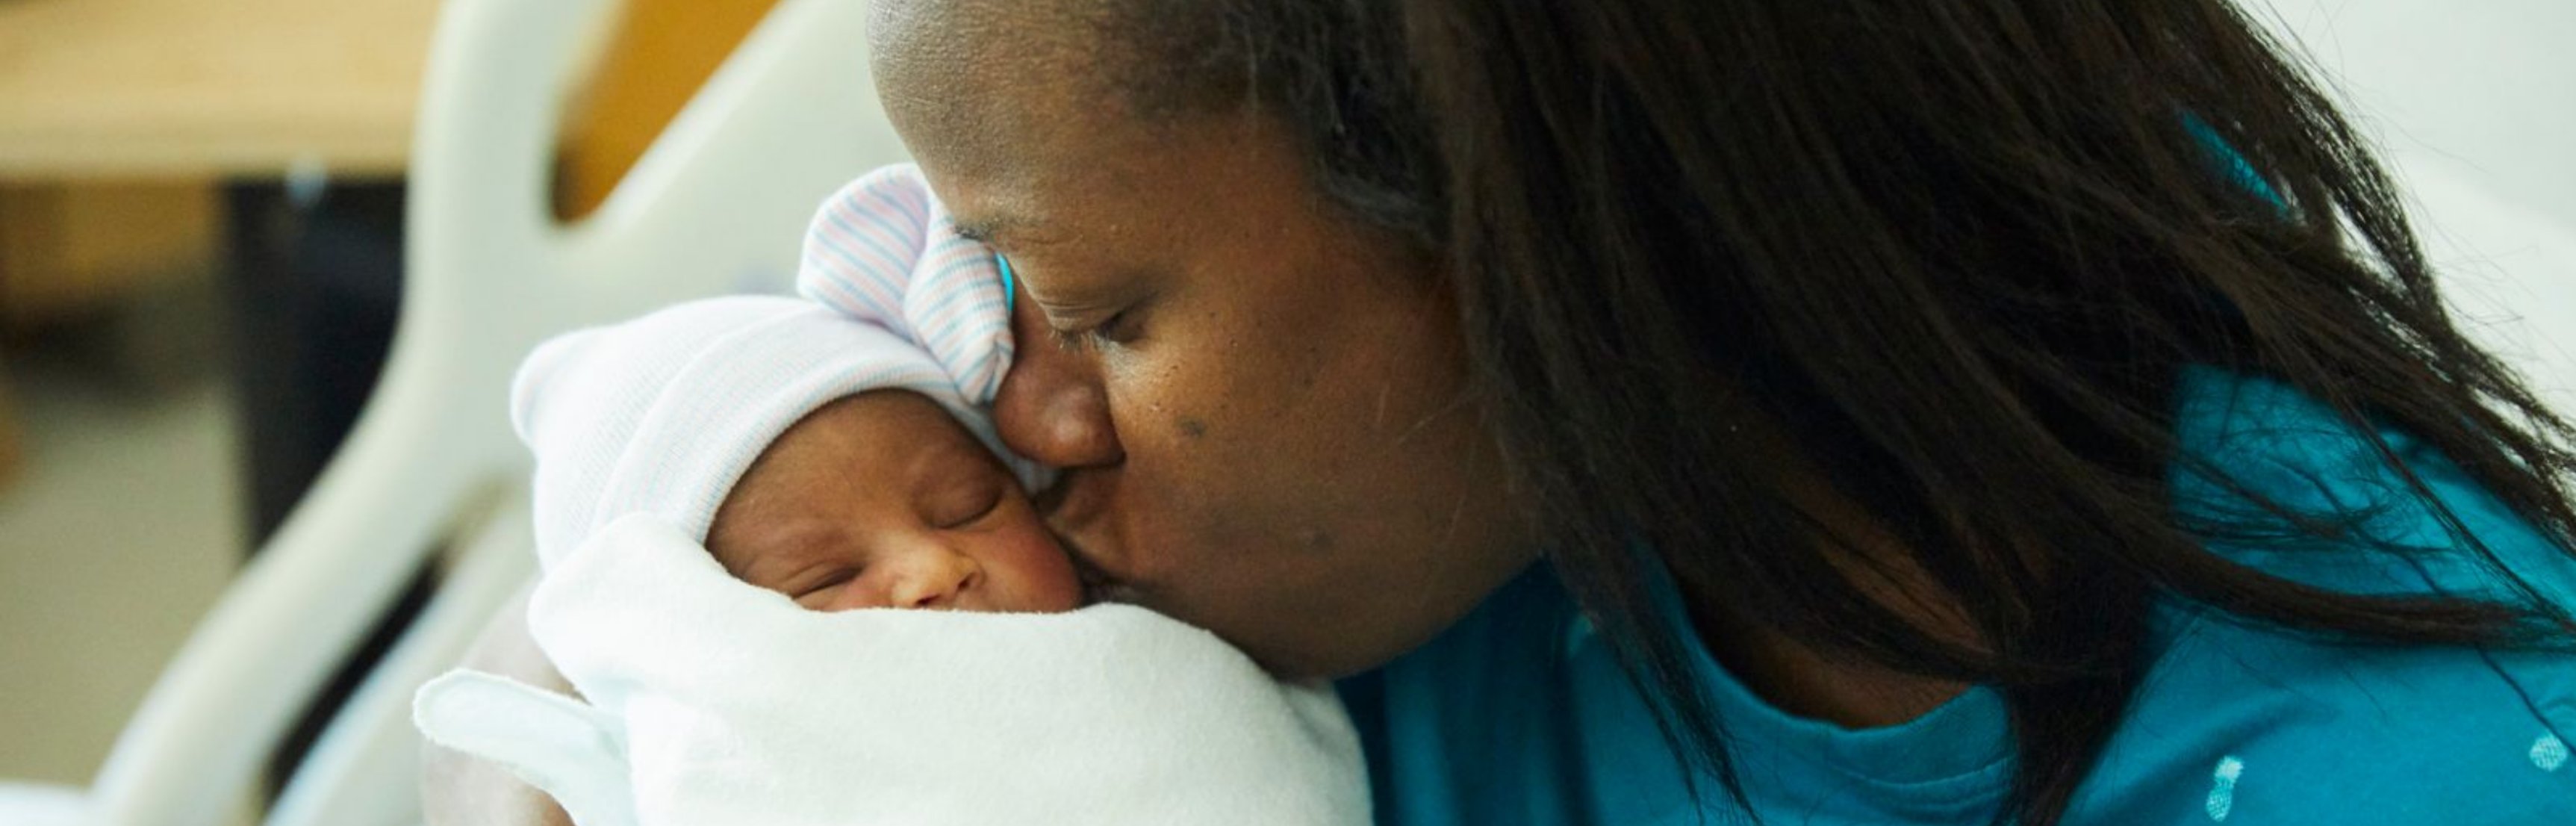 Foto de una madre besando a su hijo recién nacido